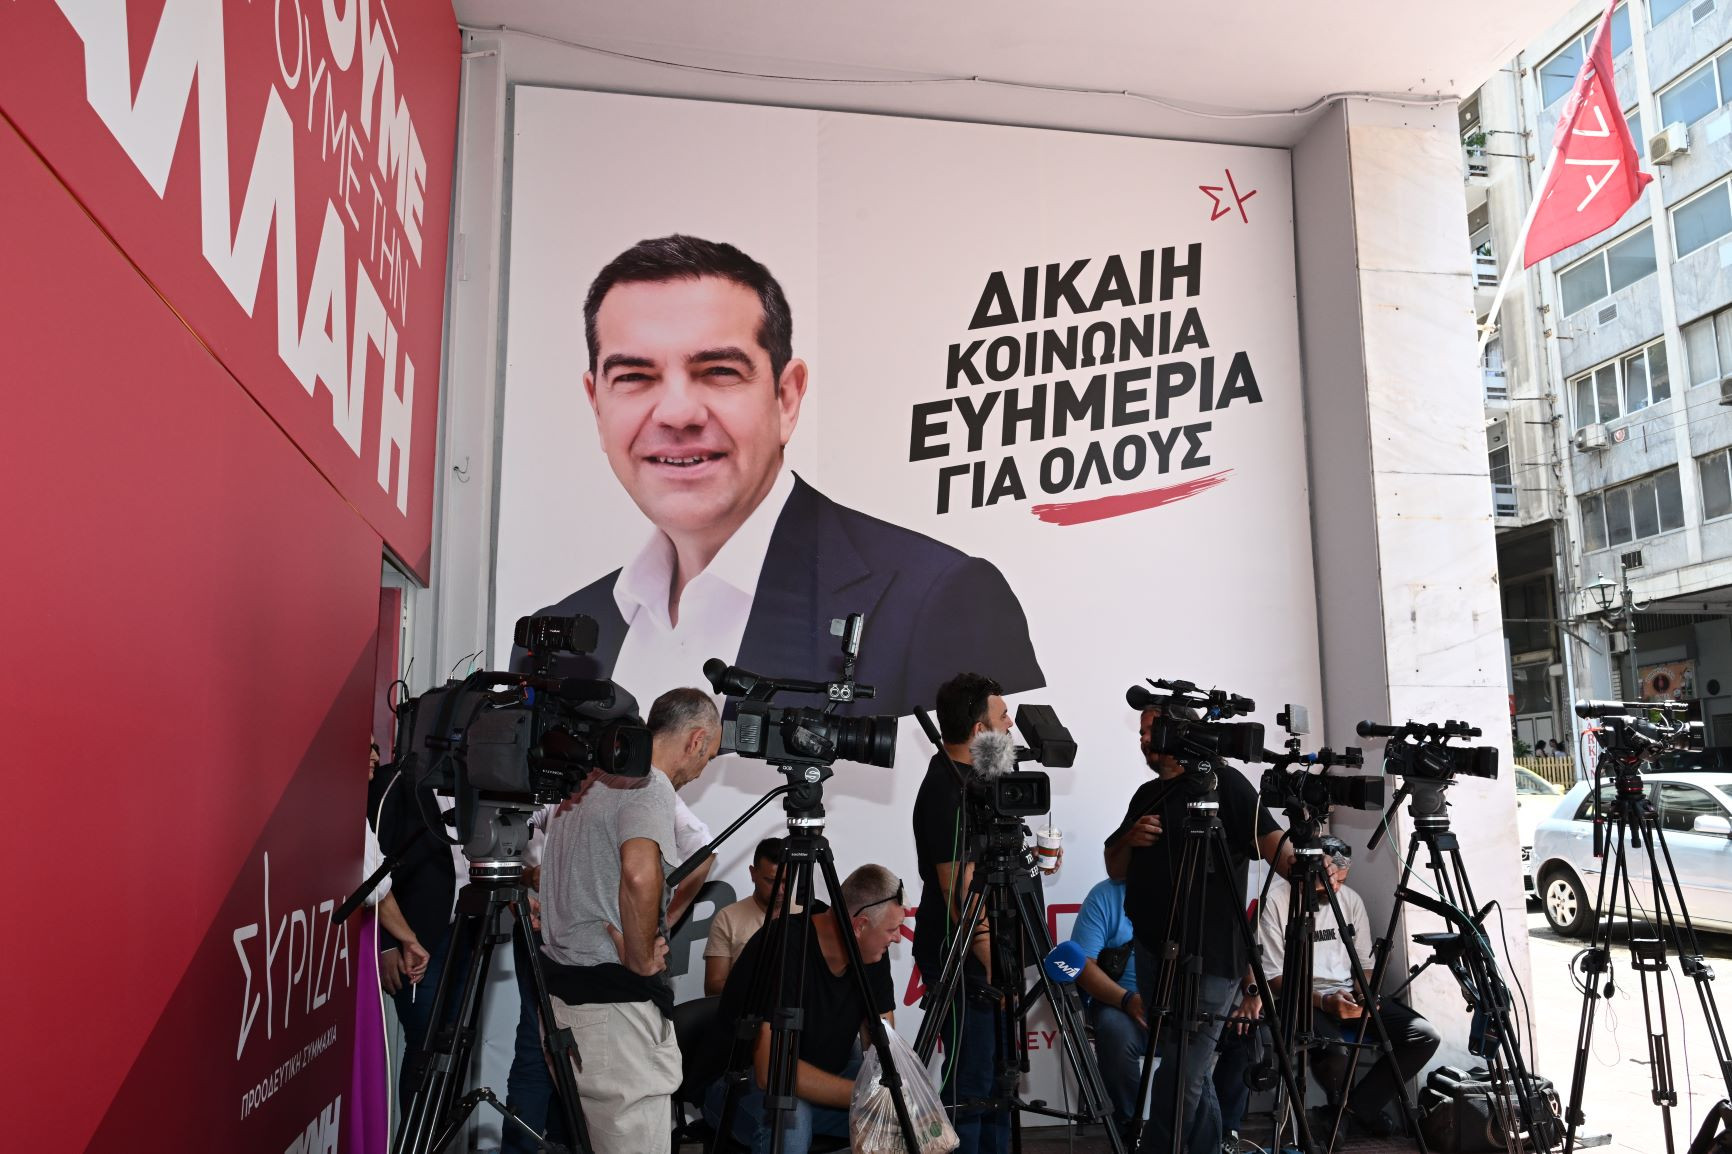 ΣΥΡΙΖΑ και ΠΑΣΟΚ χωρίς τον Τσίπρα: Και τώρα, τι;